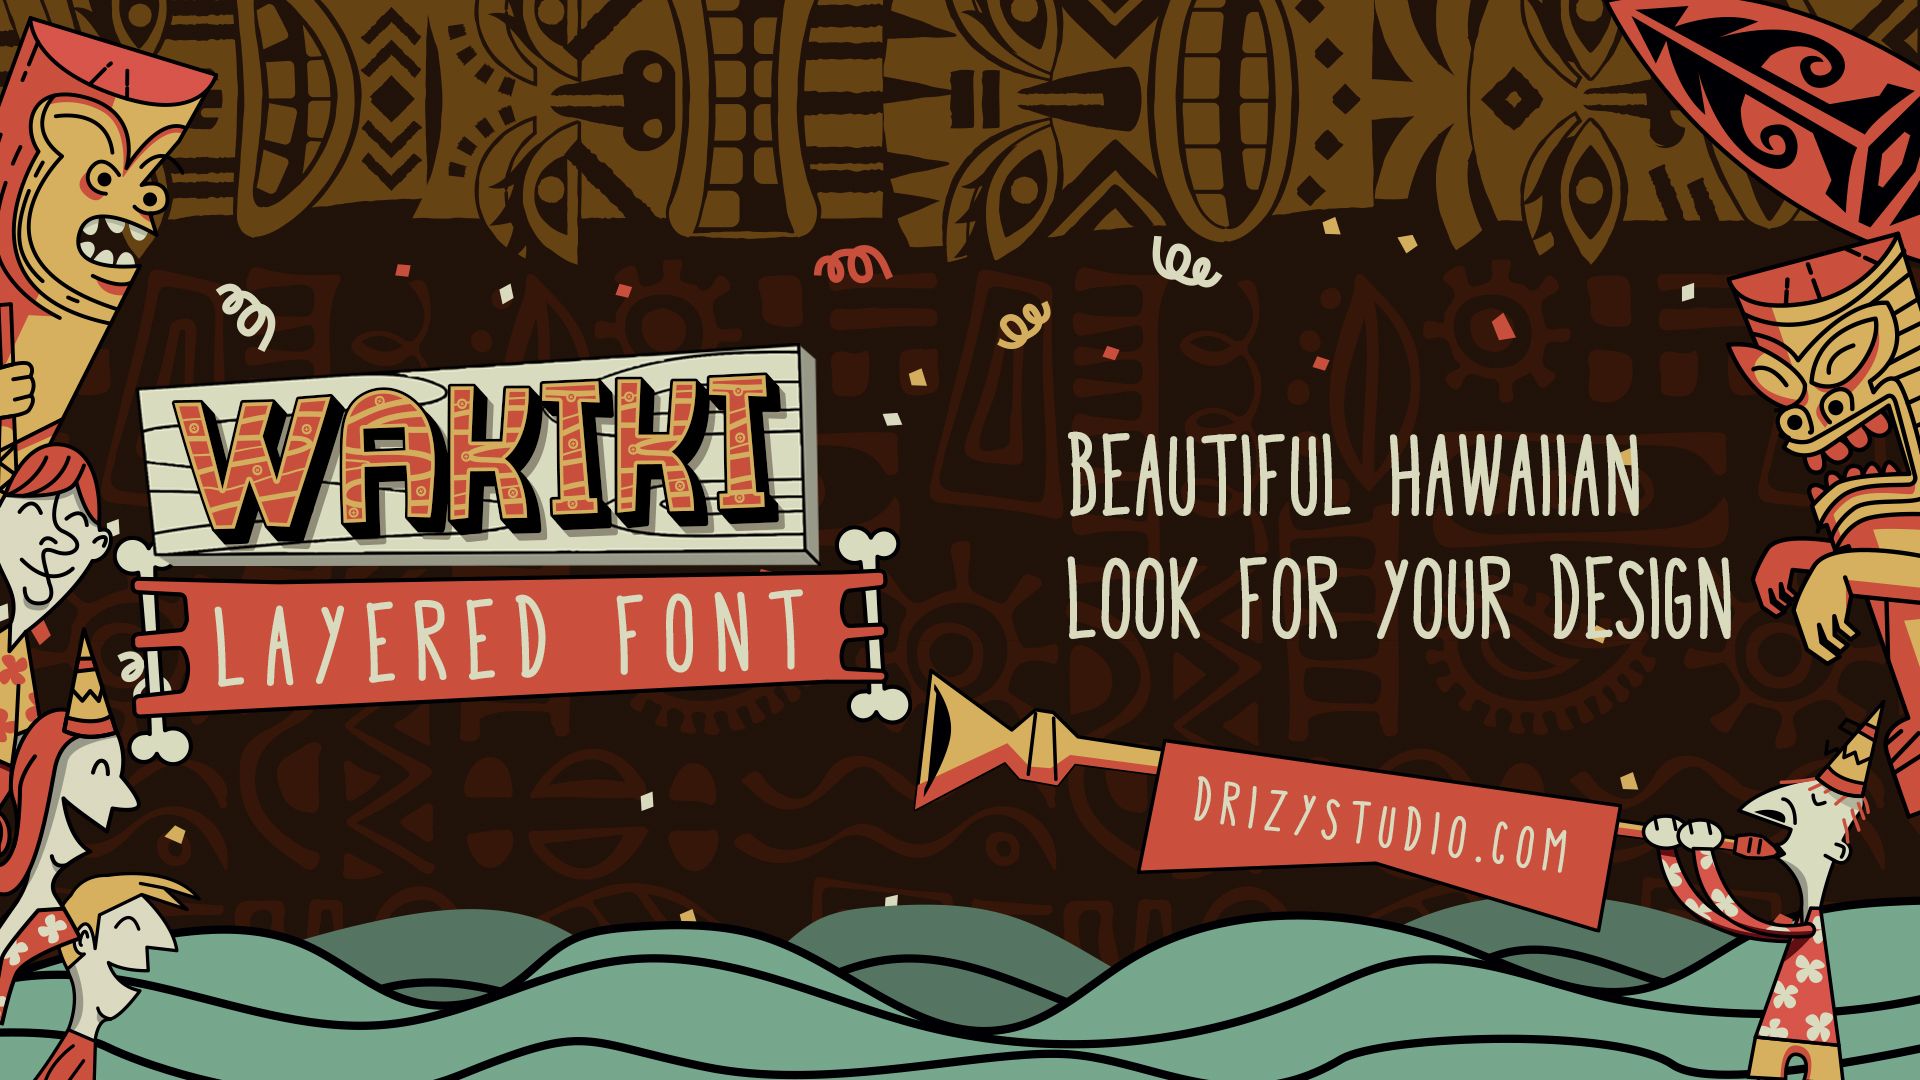 Wakiki Layered Typeface Fun Hawaiian Font for Your Design